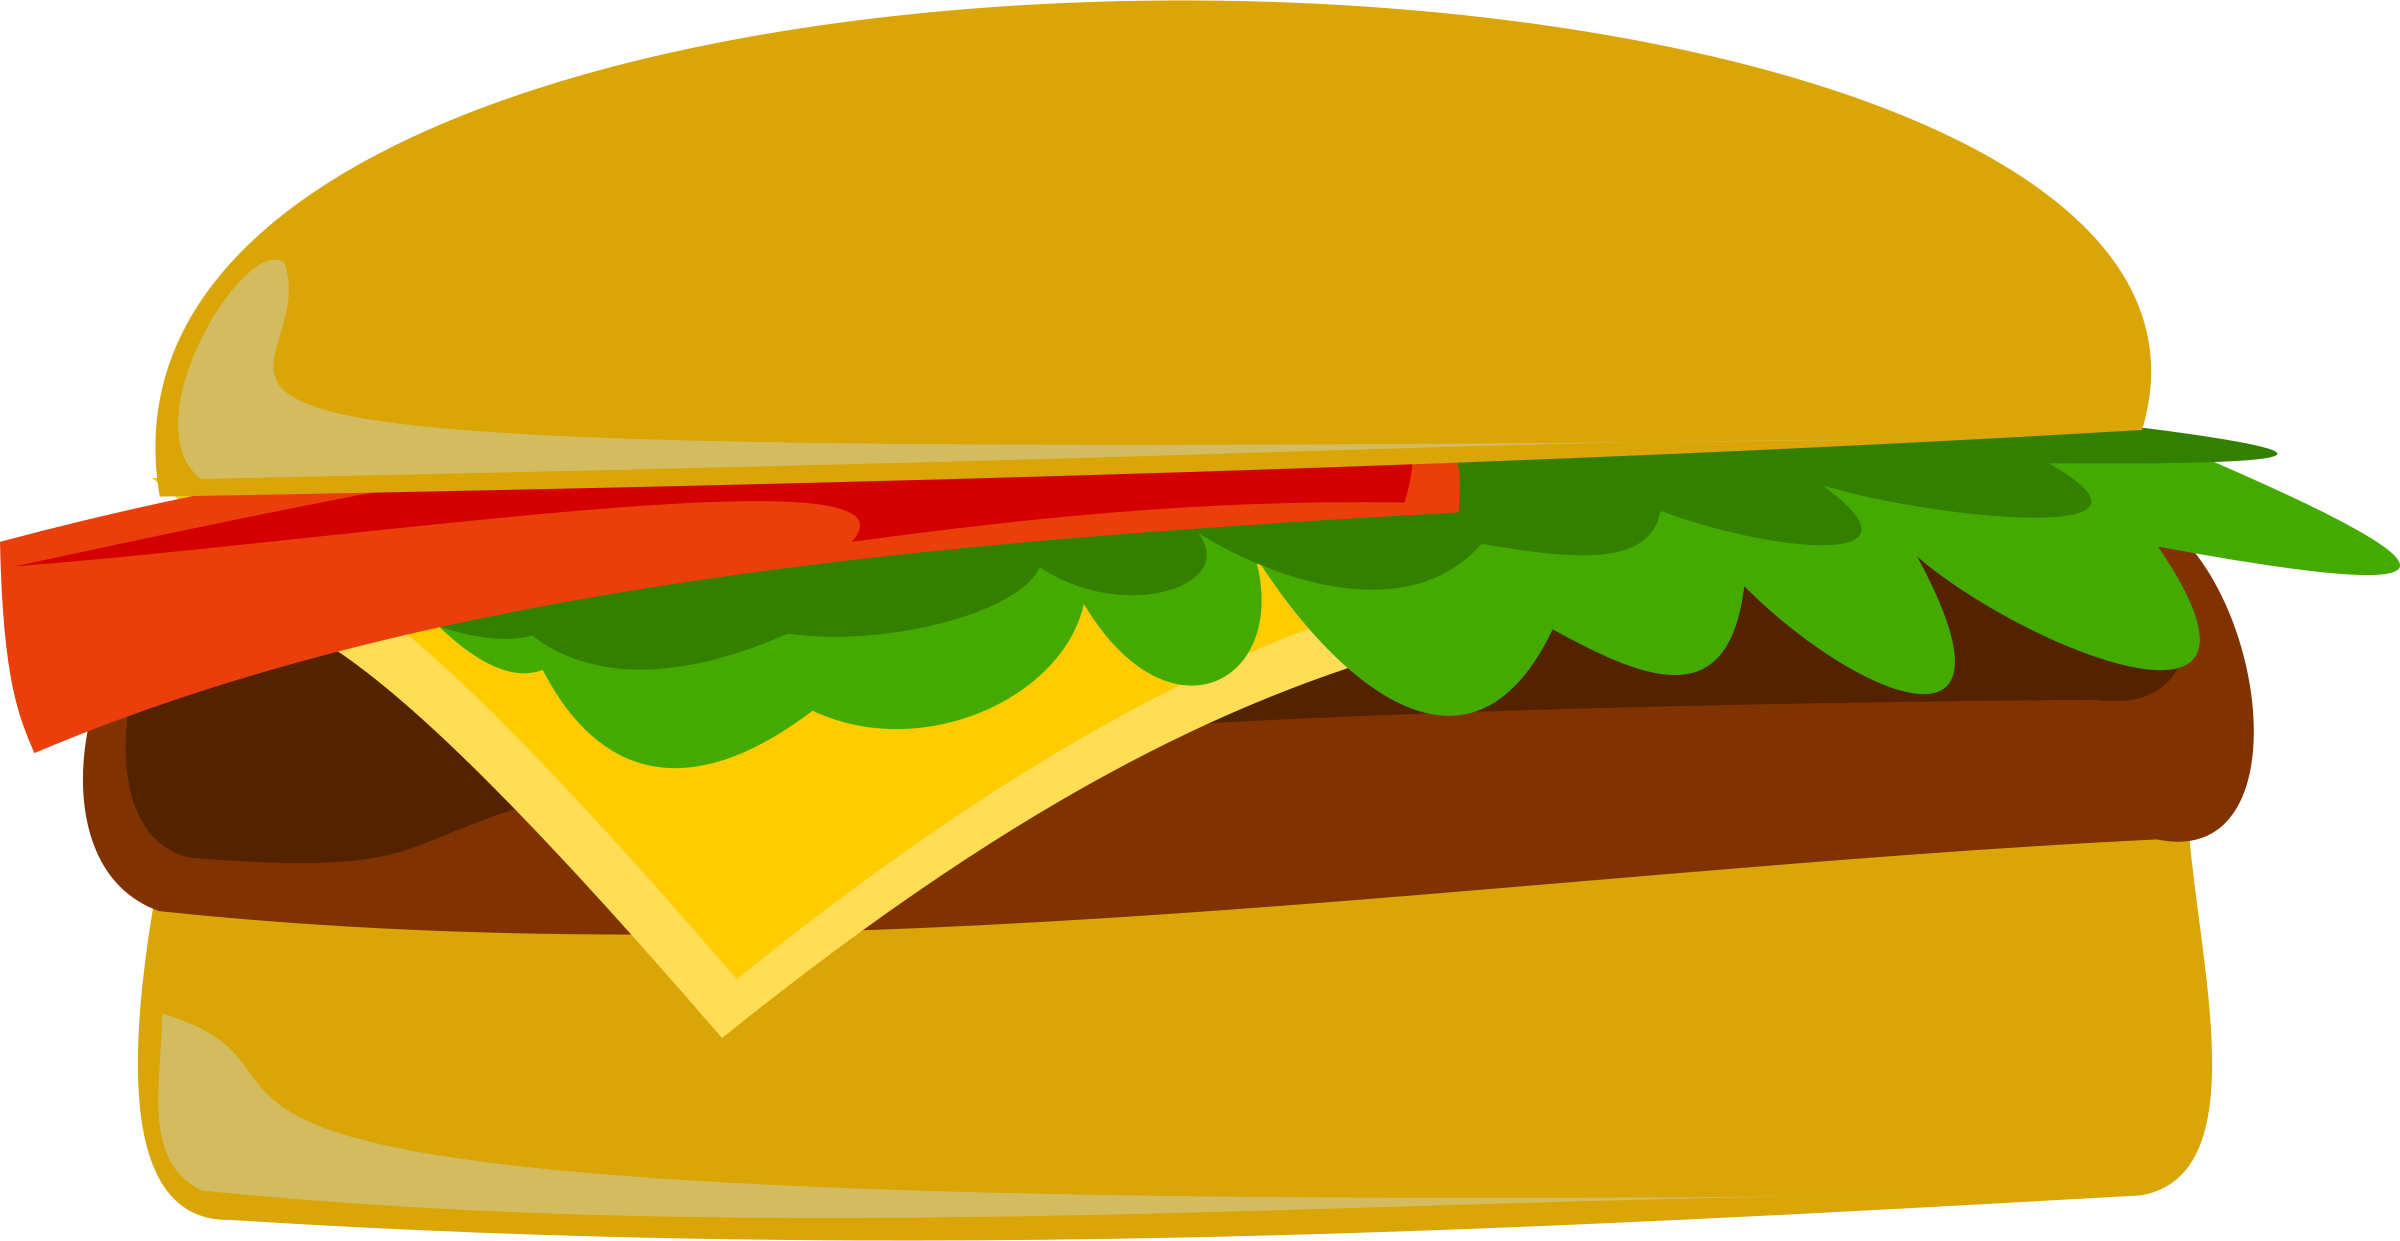 Burger Clip Art